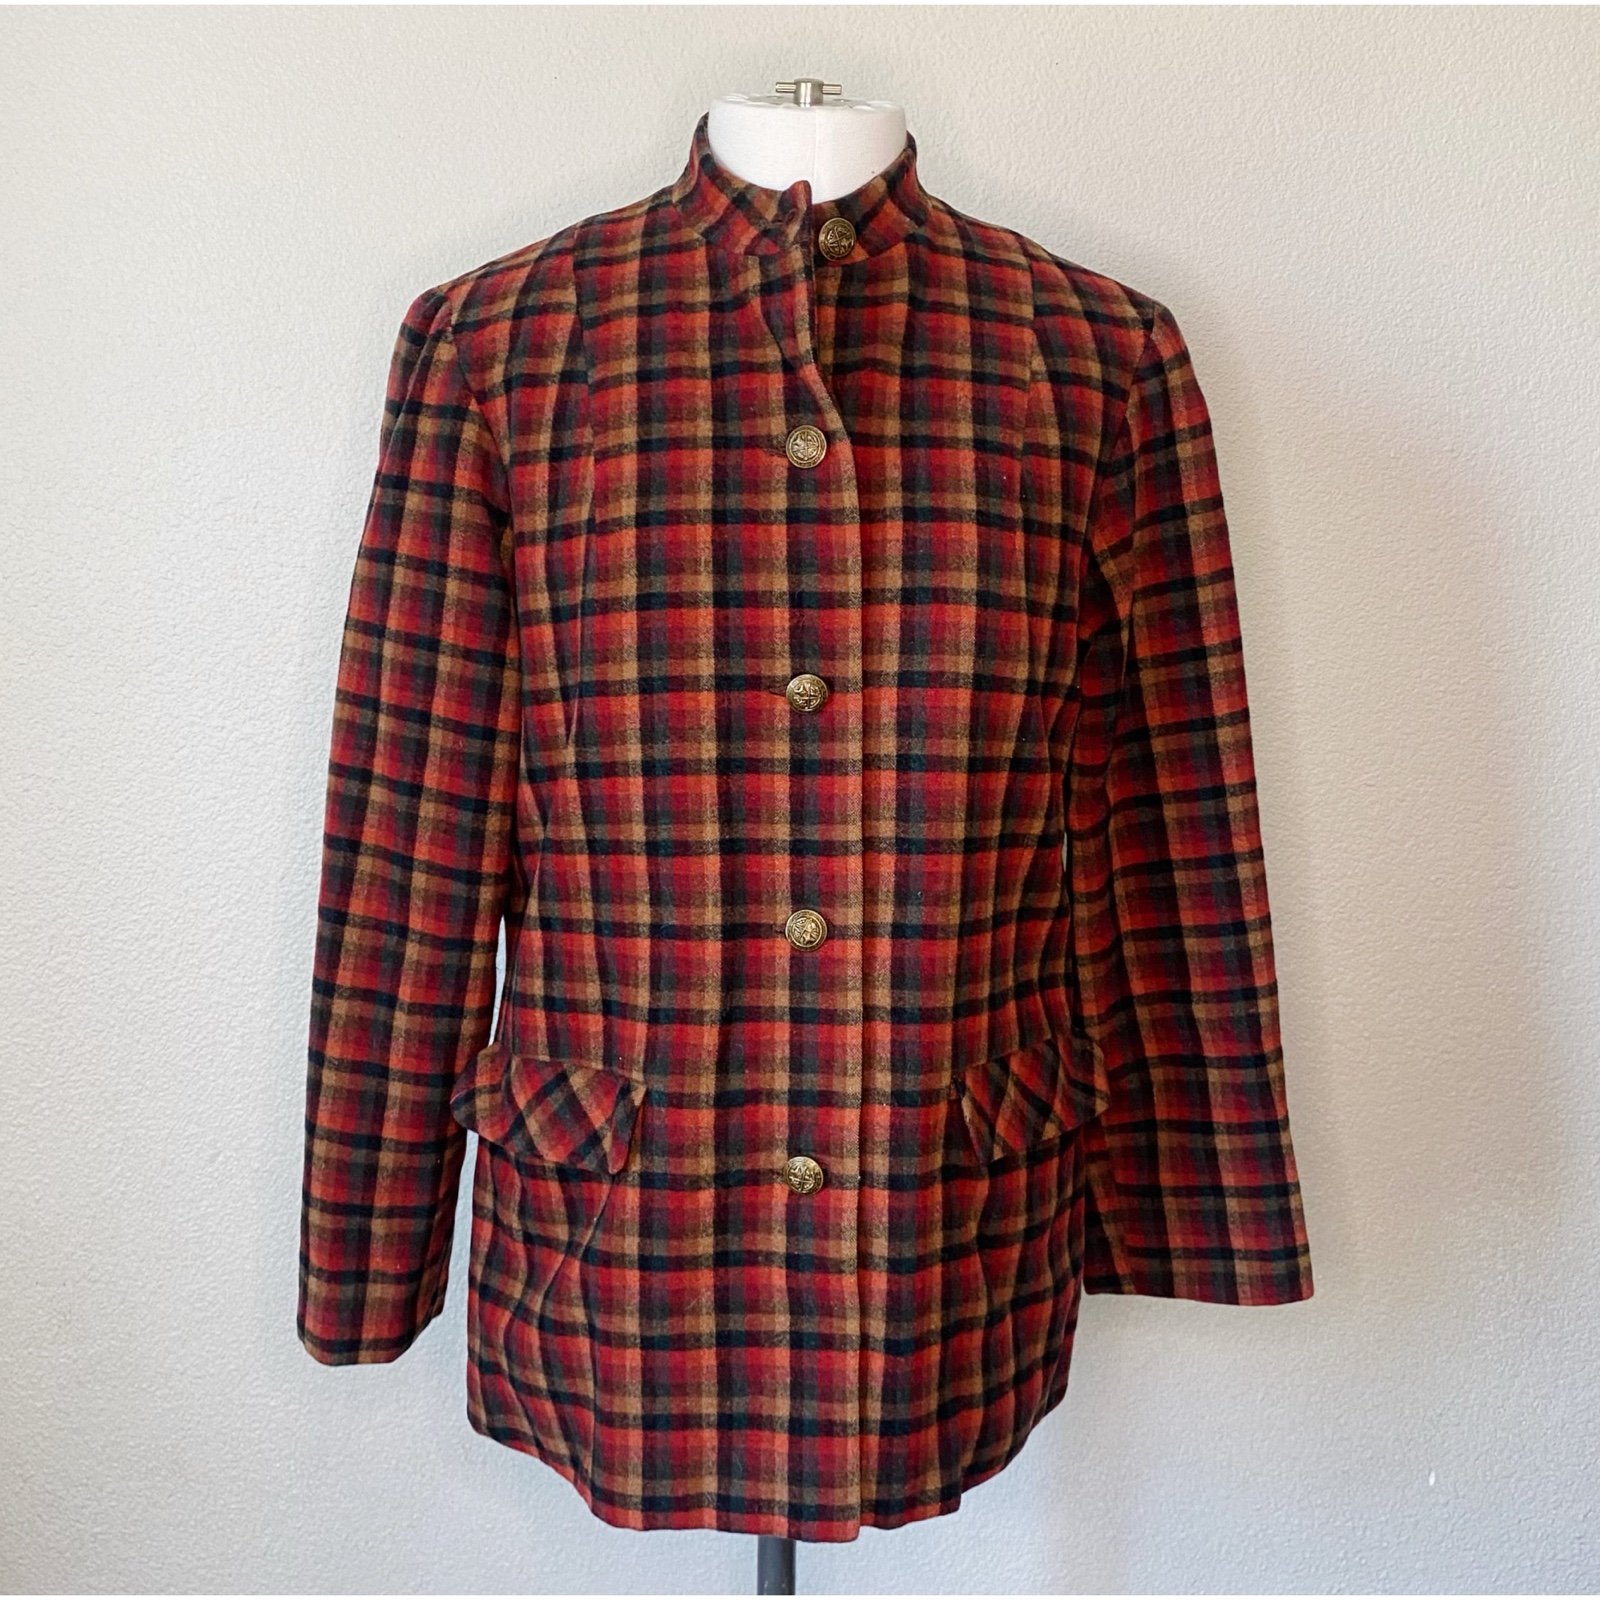 Beautiful Vintage 70’s Colorful Plaid Jacket Coat Blazer PjeuJaGz0 Online Shop